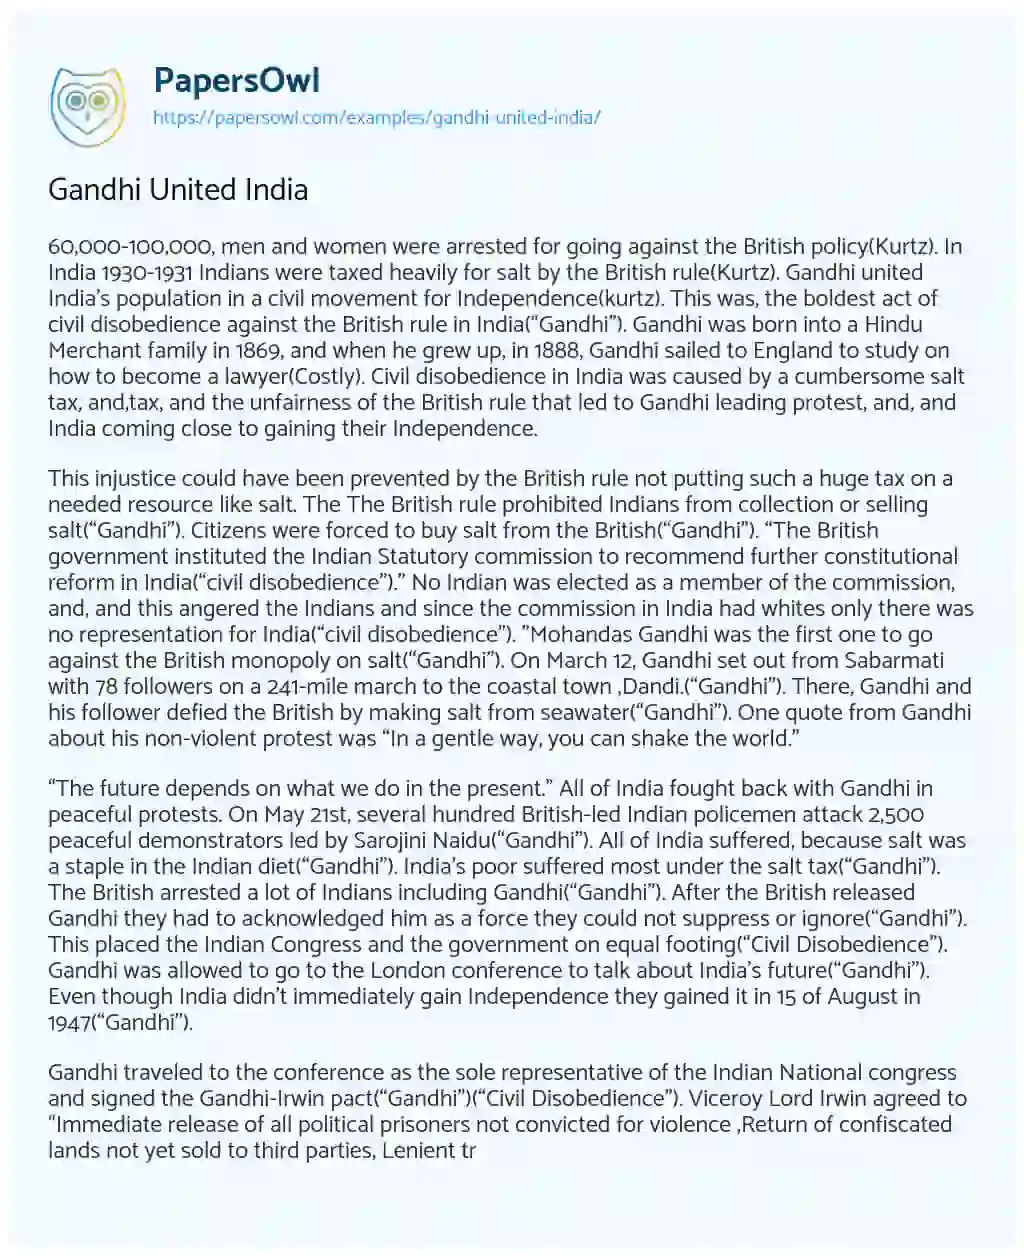 Essay on Gandhi United India